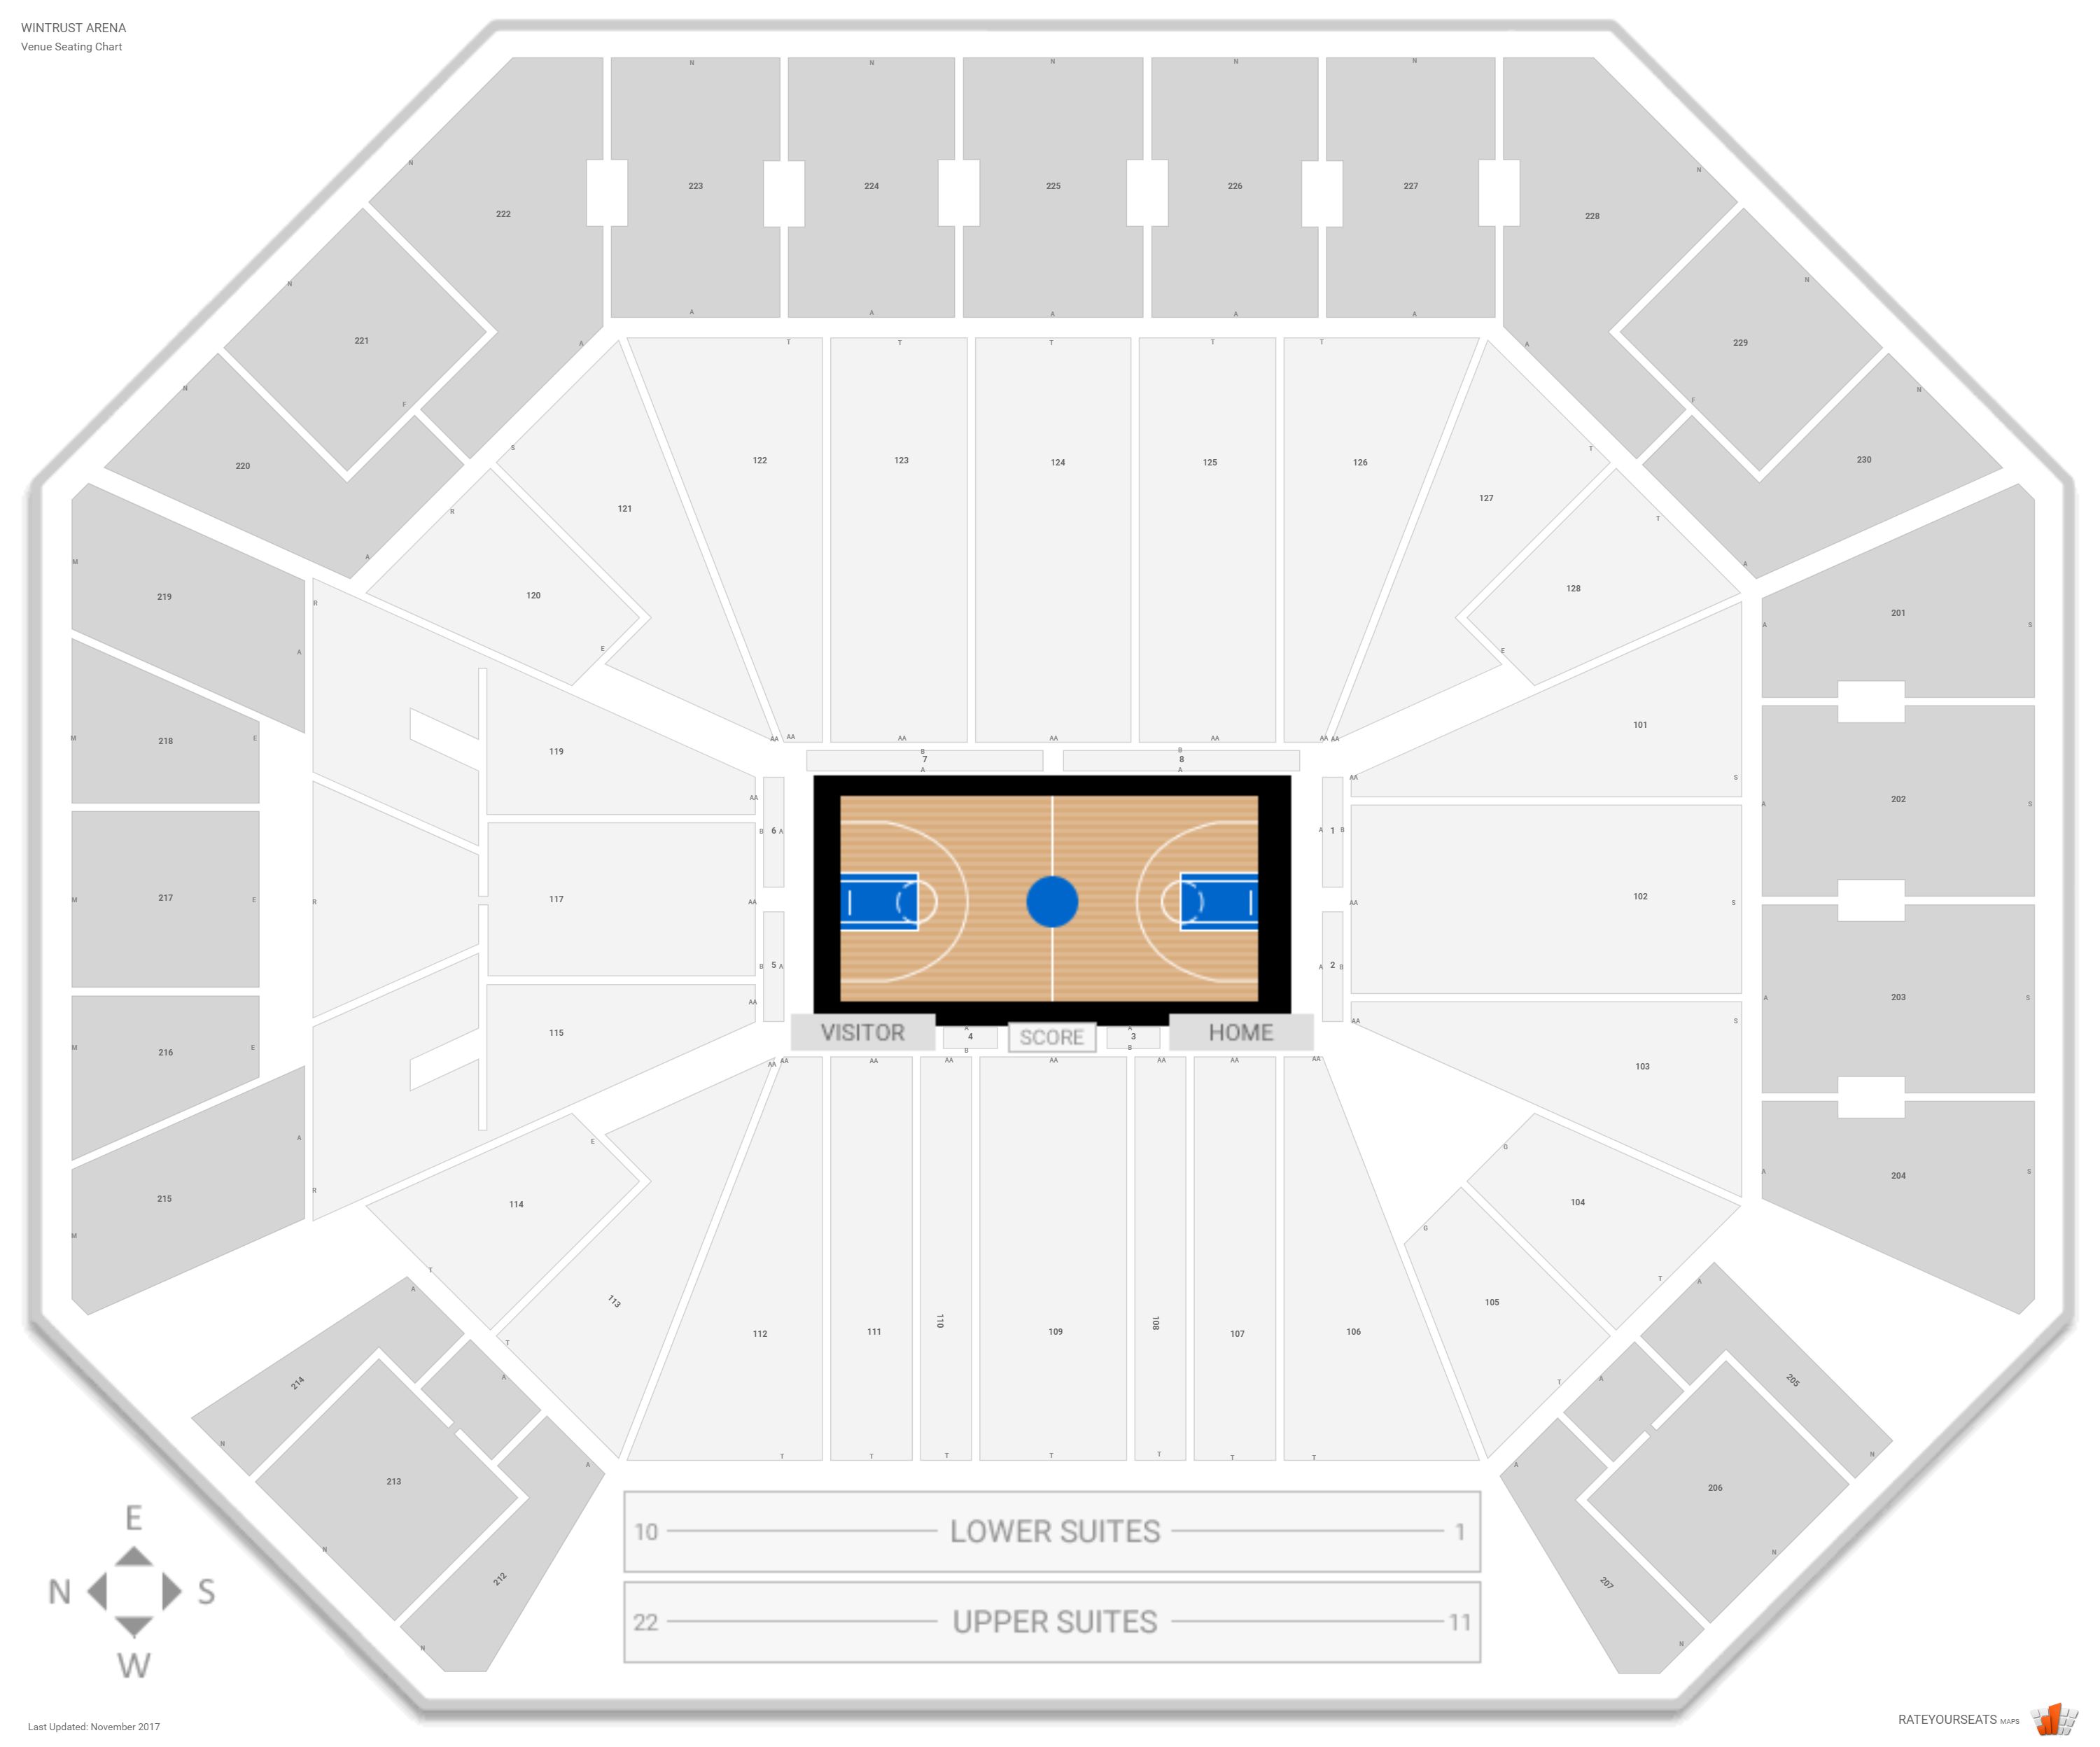 Wintrust Arena (DePaul) Seating Guide - RateYourSeats.com